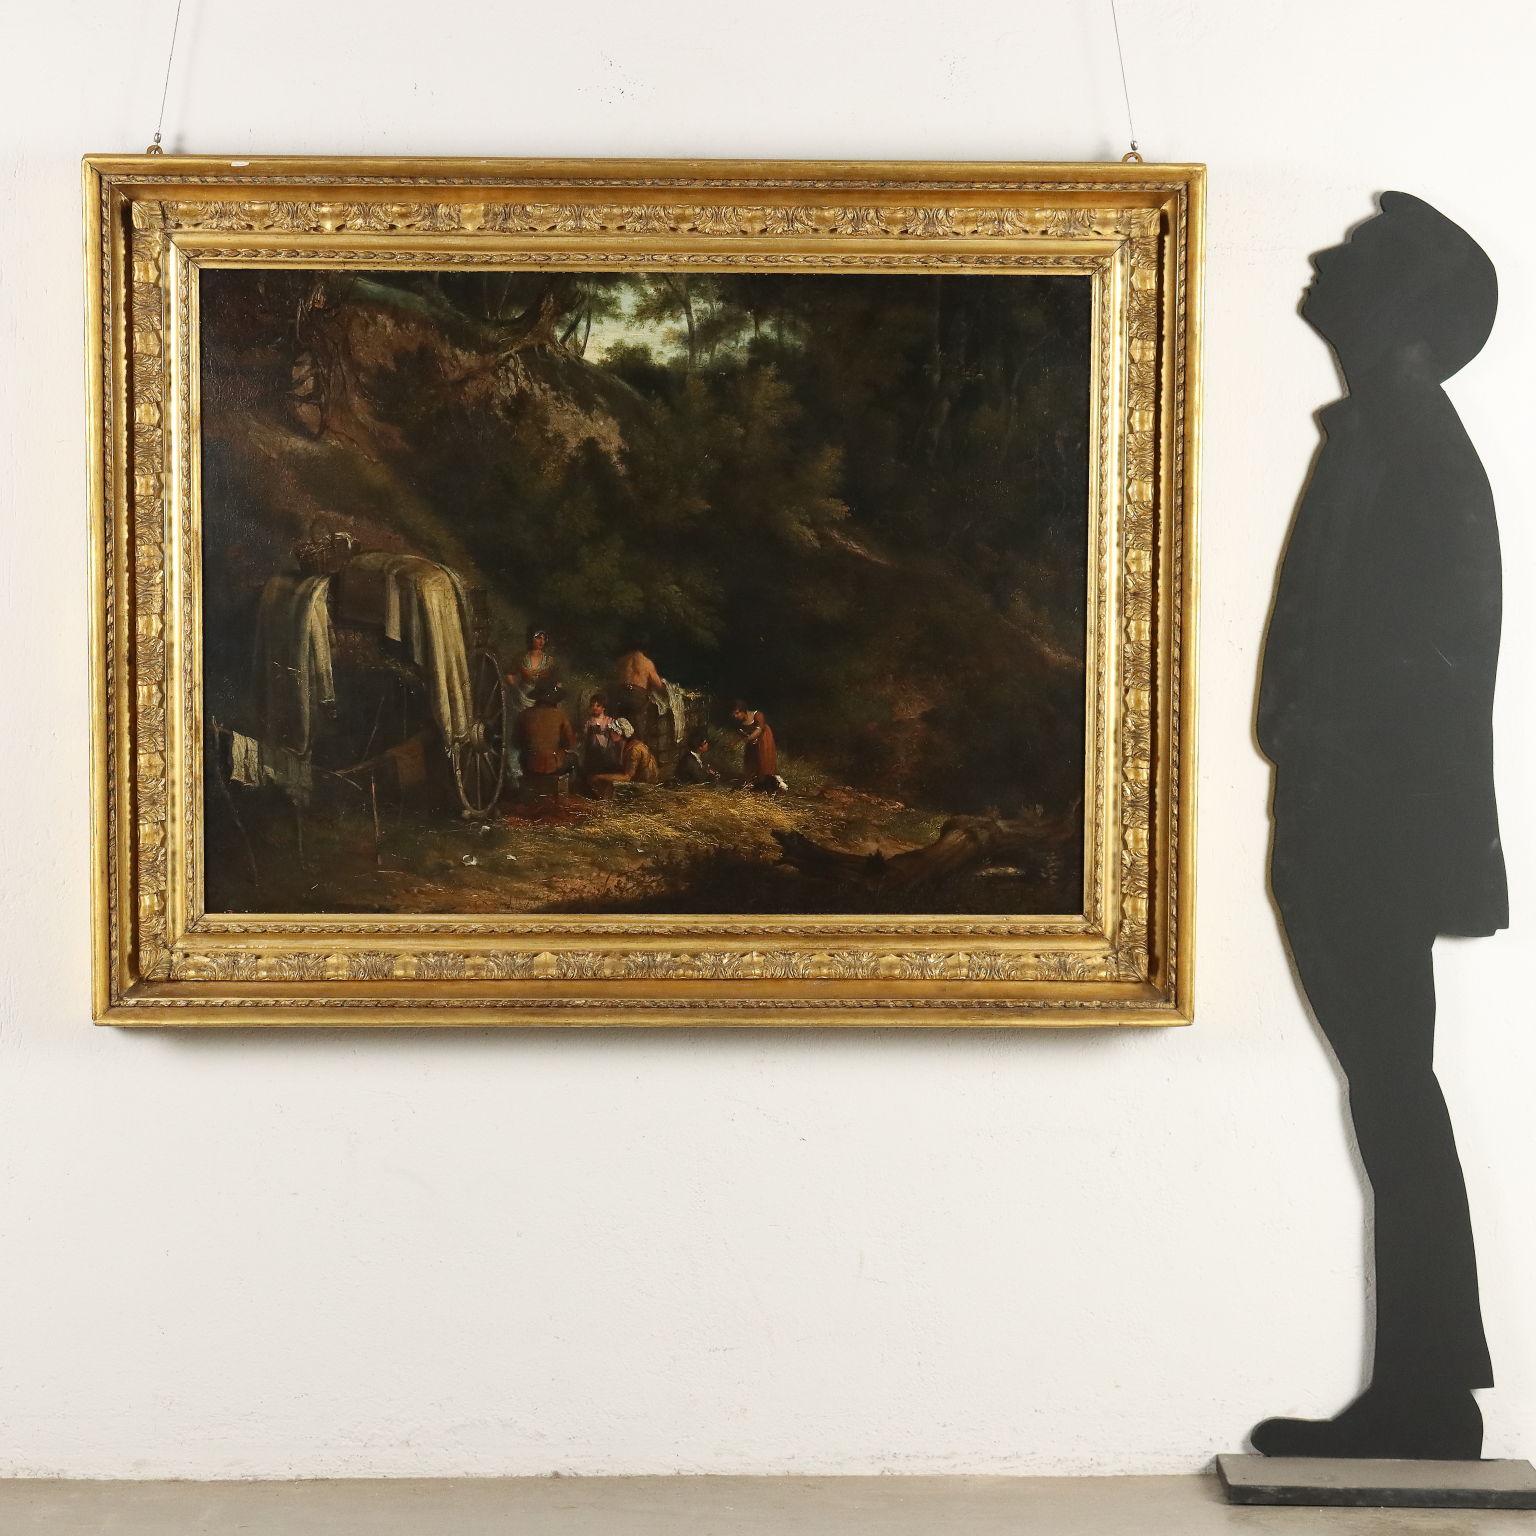 Dipinto con Scena di Sosta nel Bosco 1800s - Painting by Unknown